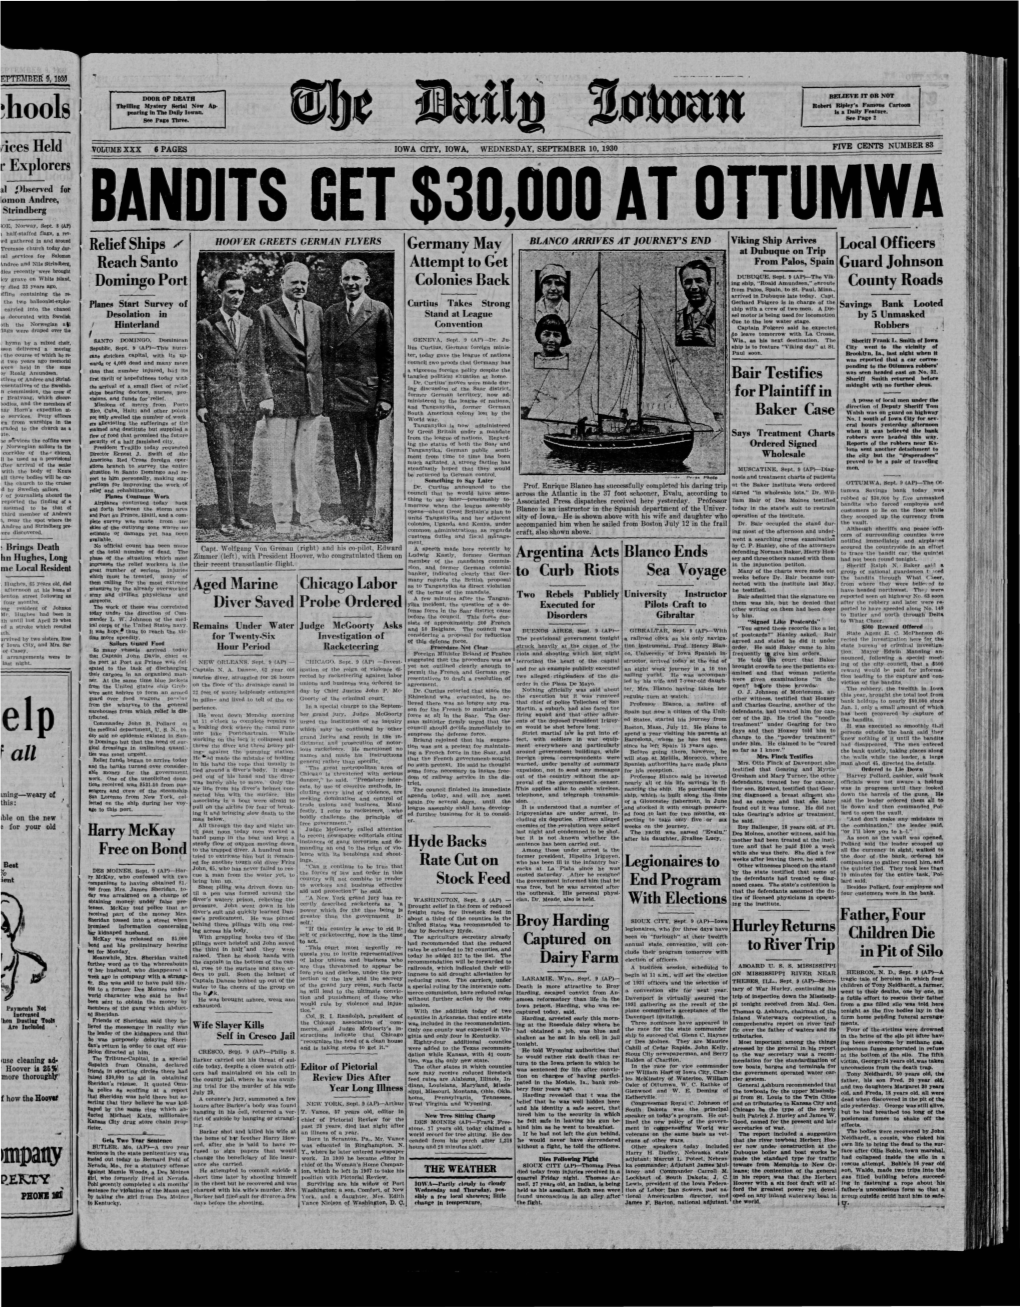 Daily Iowan (Iowa City, Iowa), 1930-09-10